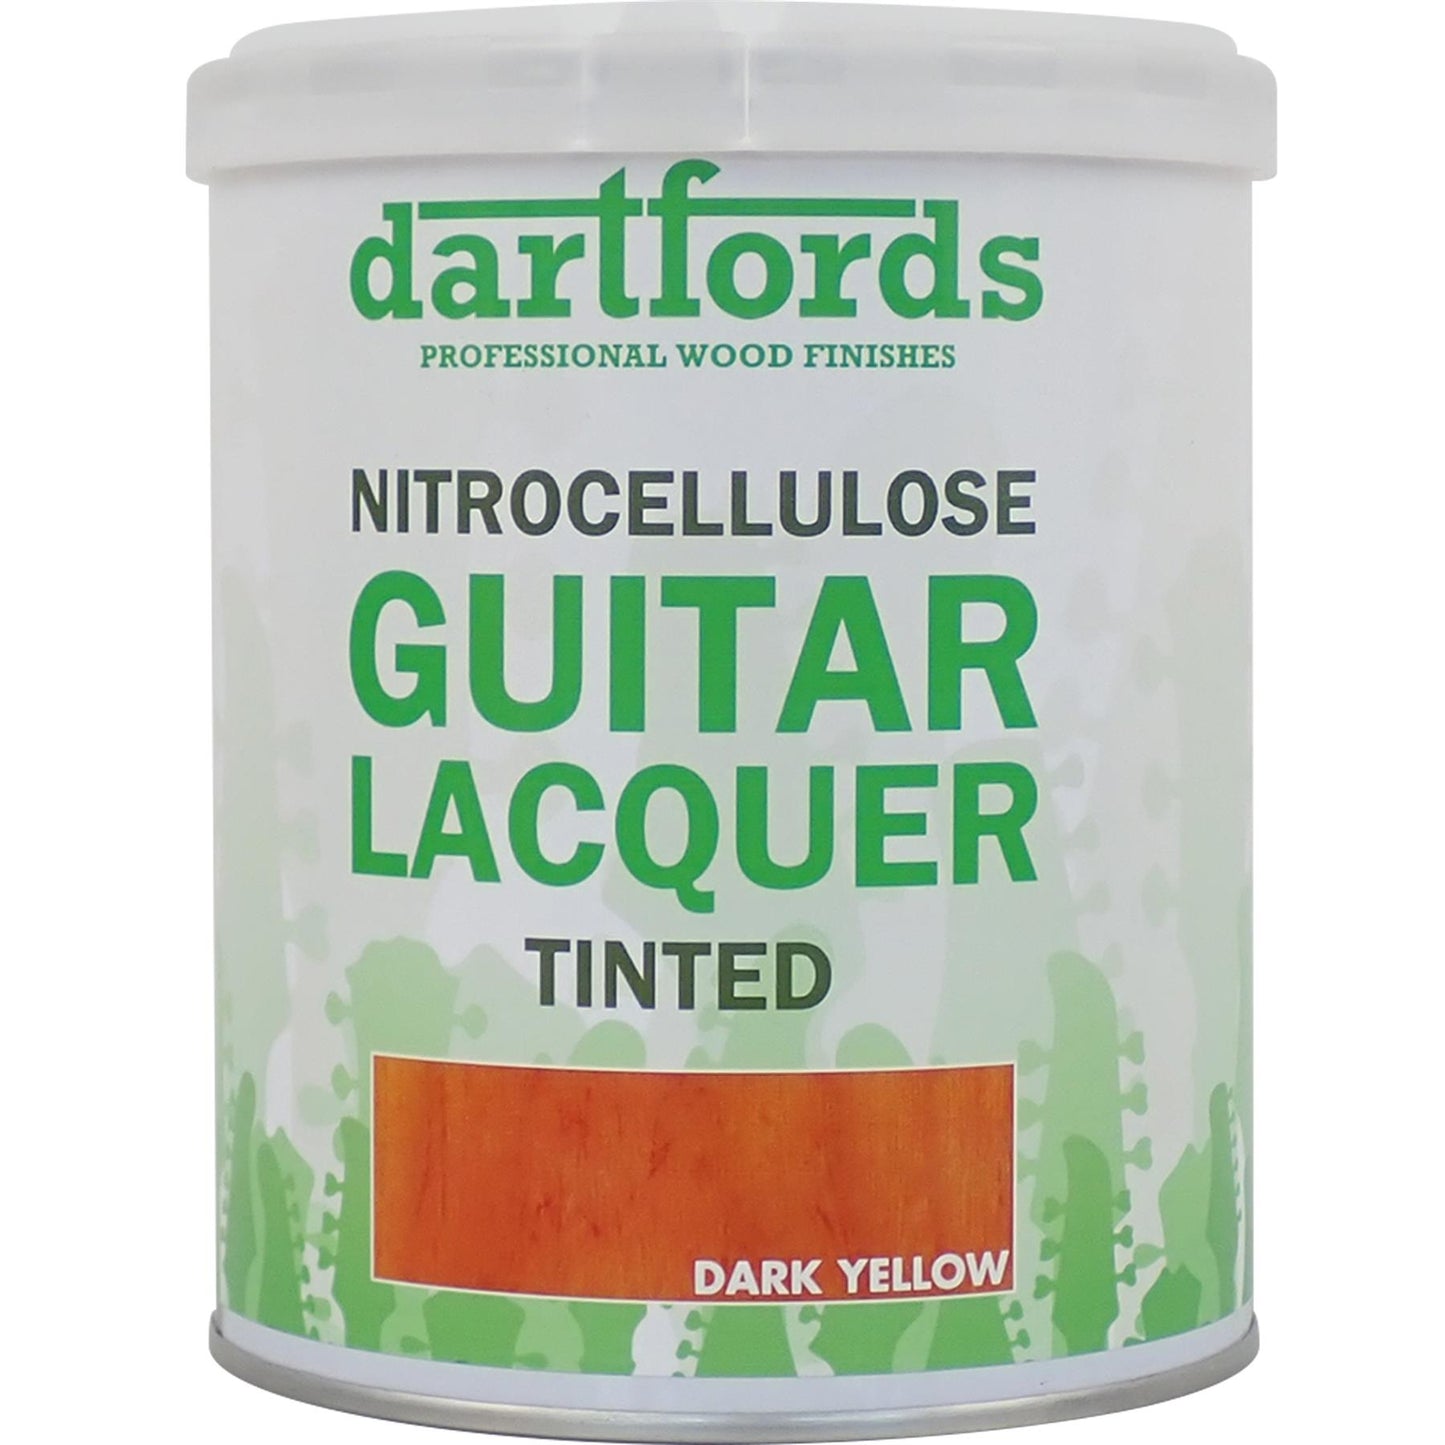 dartfords Dark Yellow Nitrocellulose Guitar Lacquer - 1 litre Tin